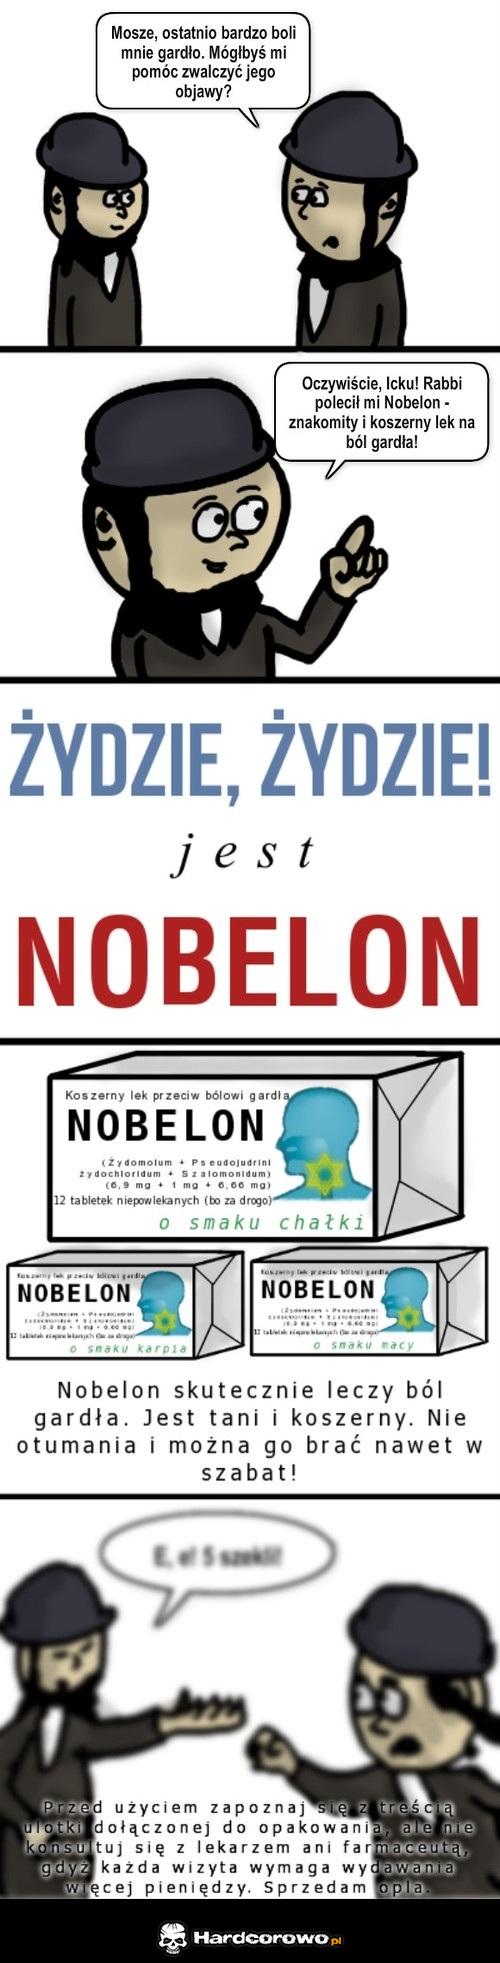 Nobelon - 1